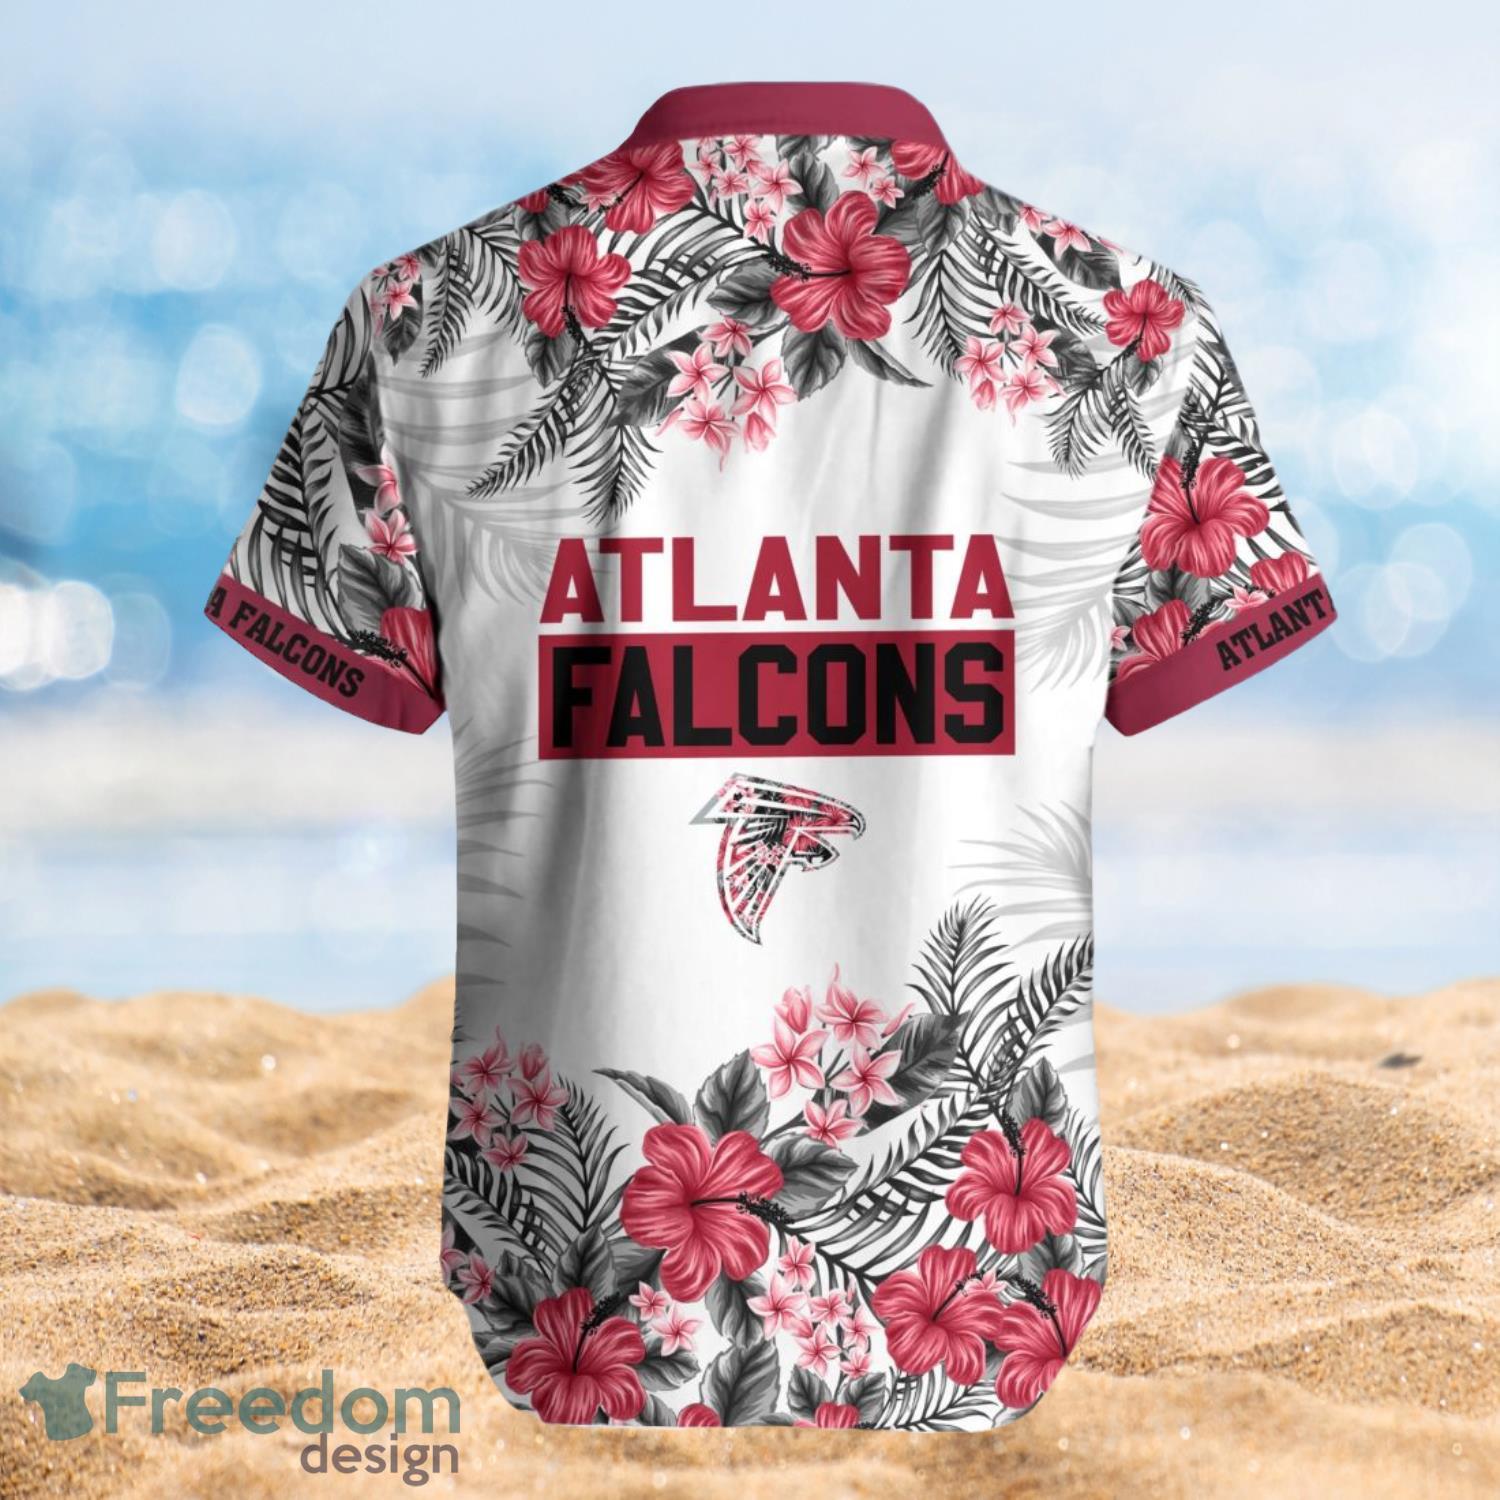 Atlanta Falcons Summer Beach Shirt and Shorts Full Over Print Product Photo 2